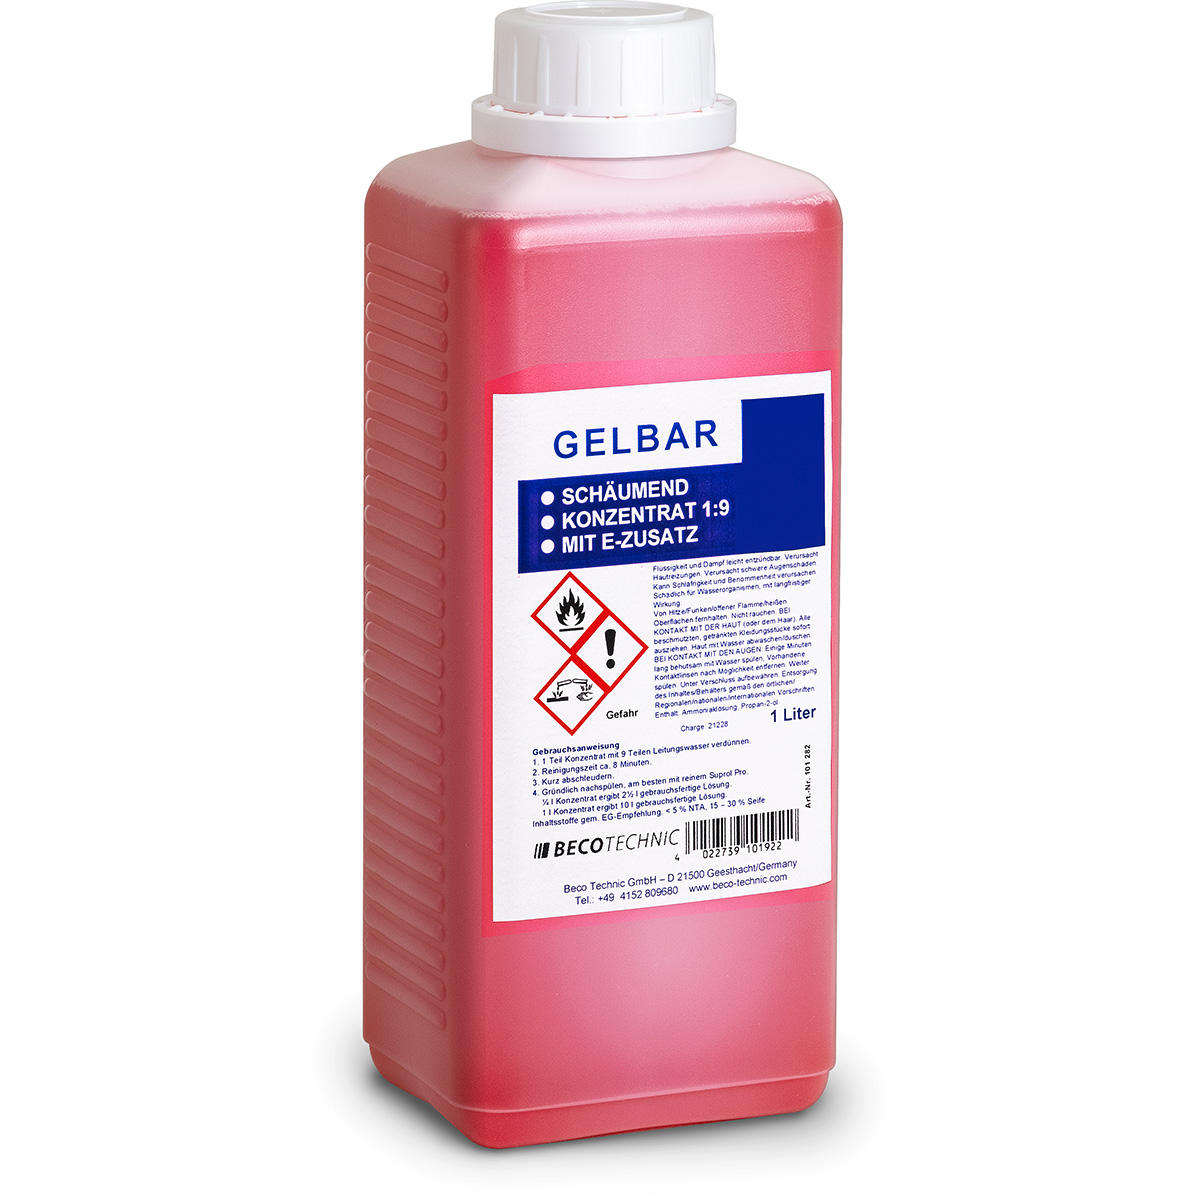 Gelbar solution 1:9 concentrate à 10 litre